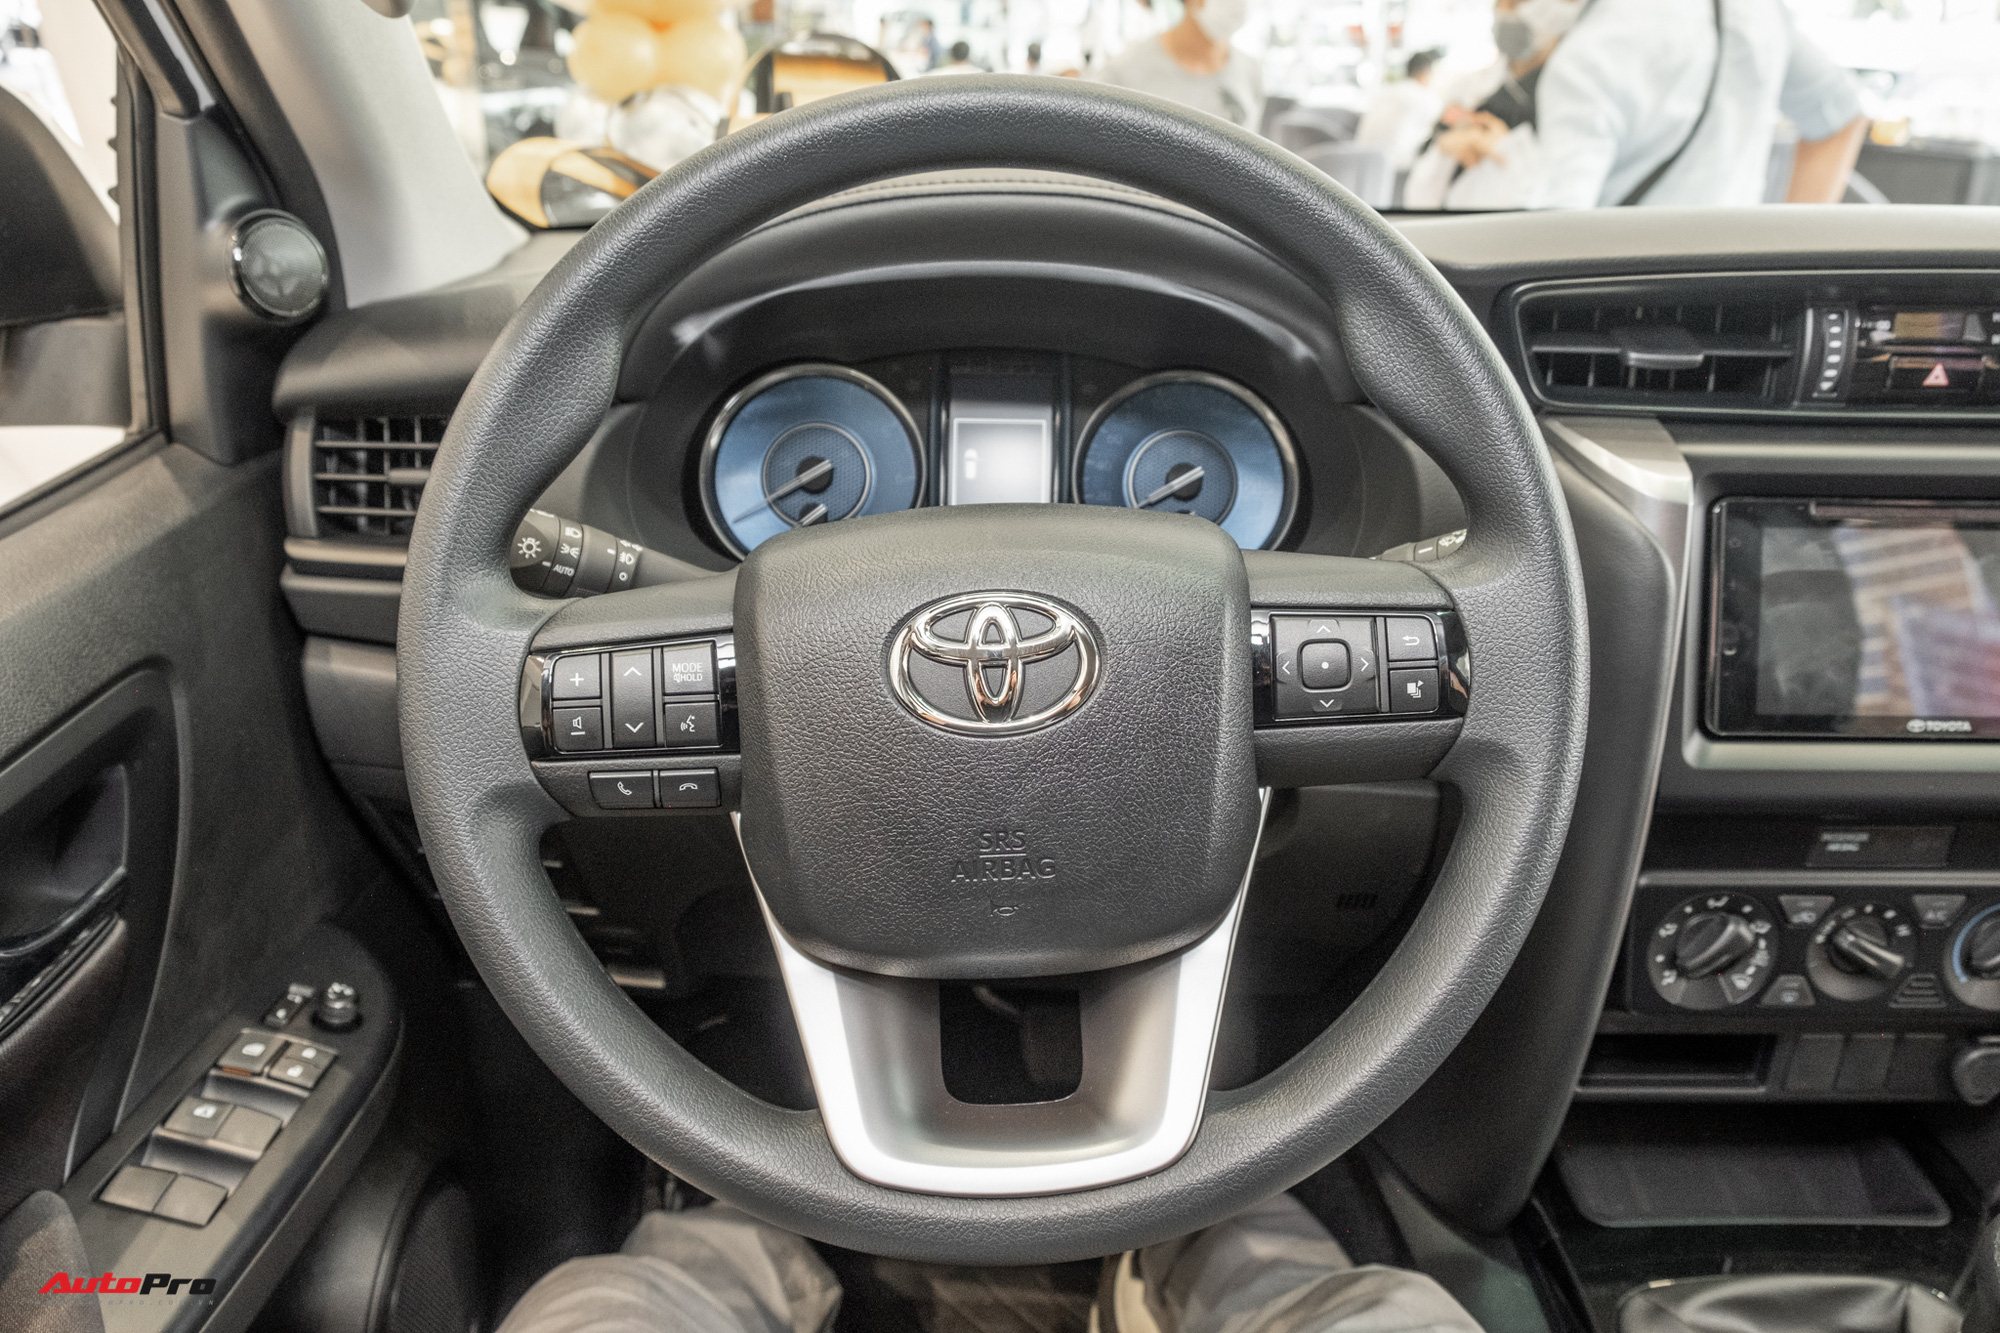 Chi tiết Toyota Fortuner 2021 bản rẻ nhất dưới 1 tỷ đồng: Trang bị thực dụng cho dân chạy dịch vụ - Ảnh 11.